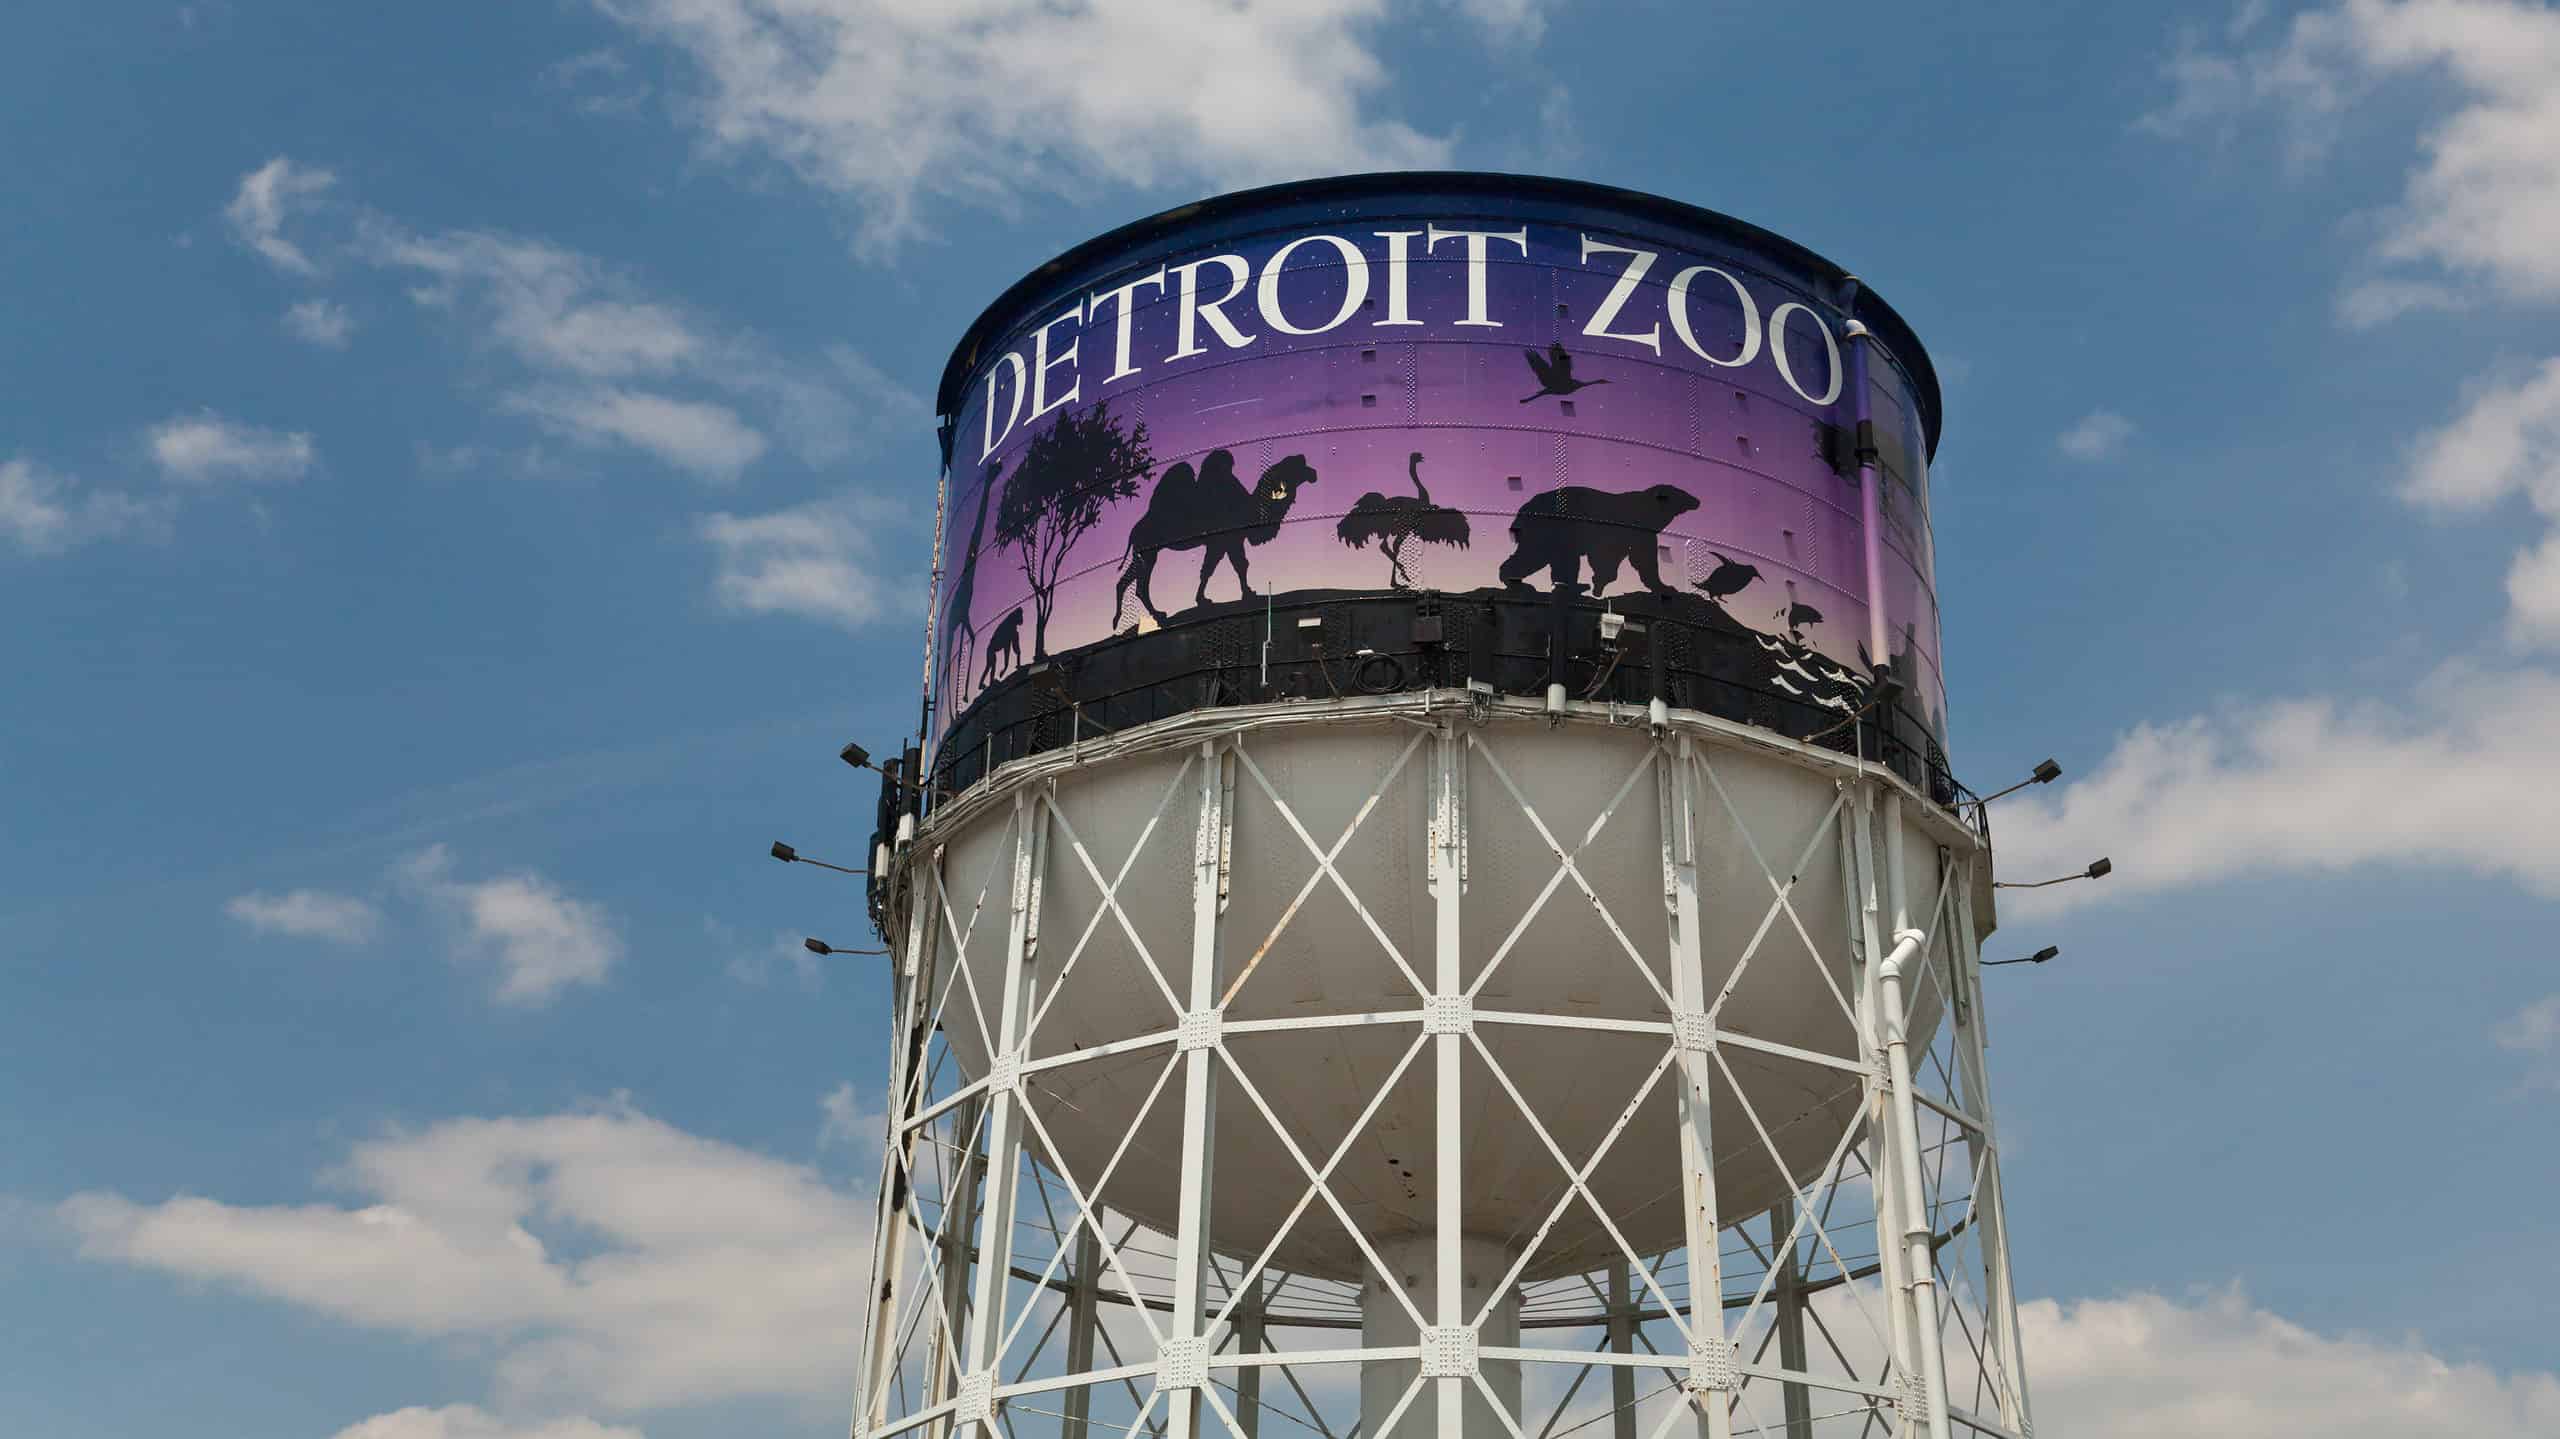 Segno della torre dell'acqua dello zoo di Detroit